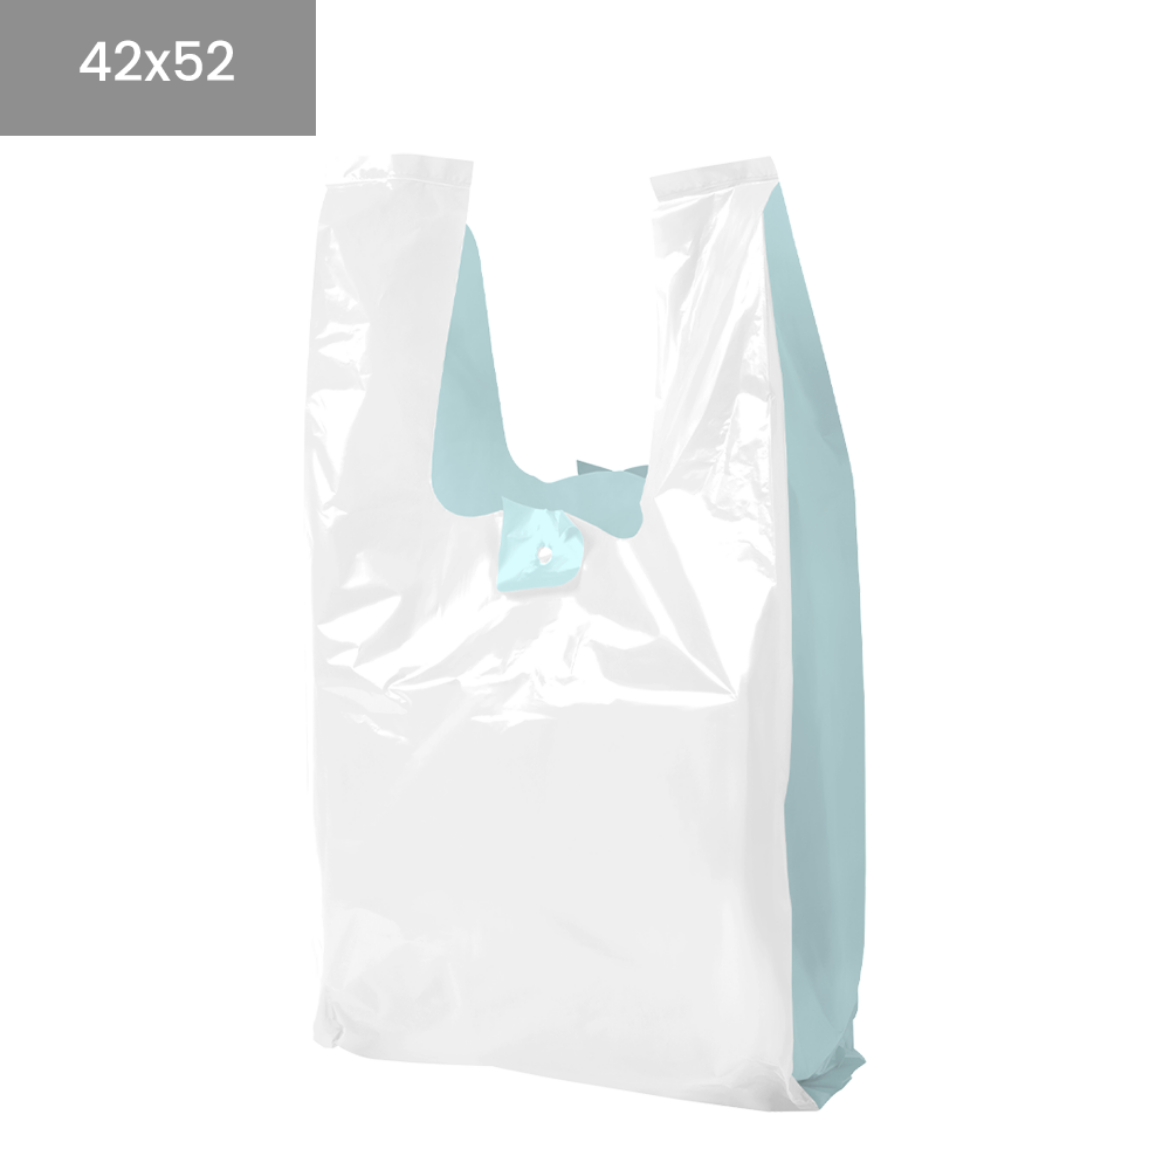 Bolsas de plastico blancas recicladas 70% 42x52